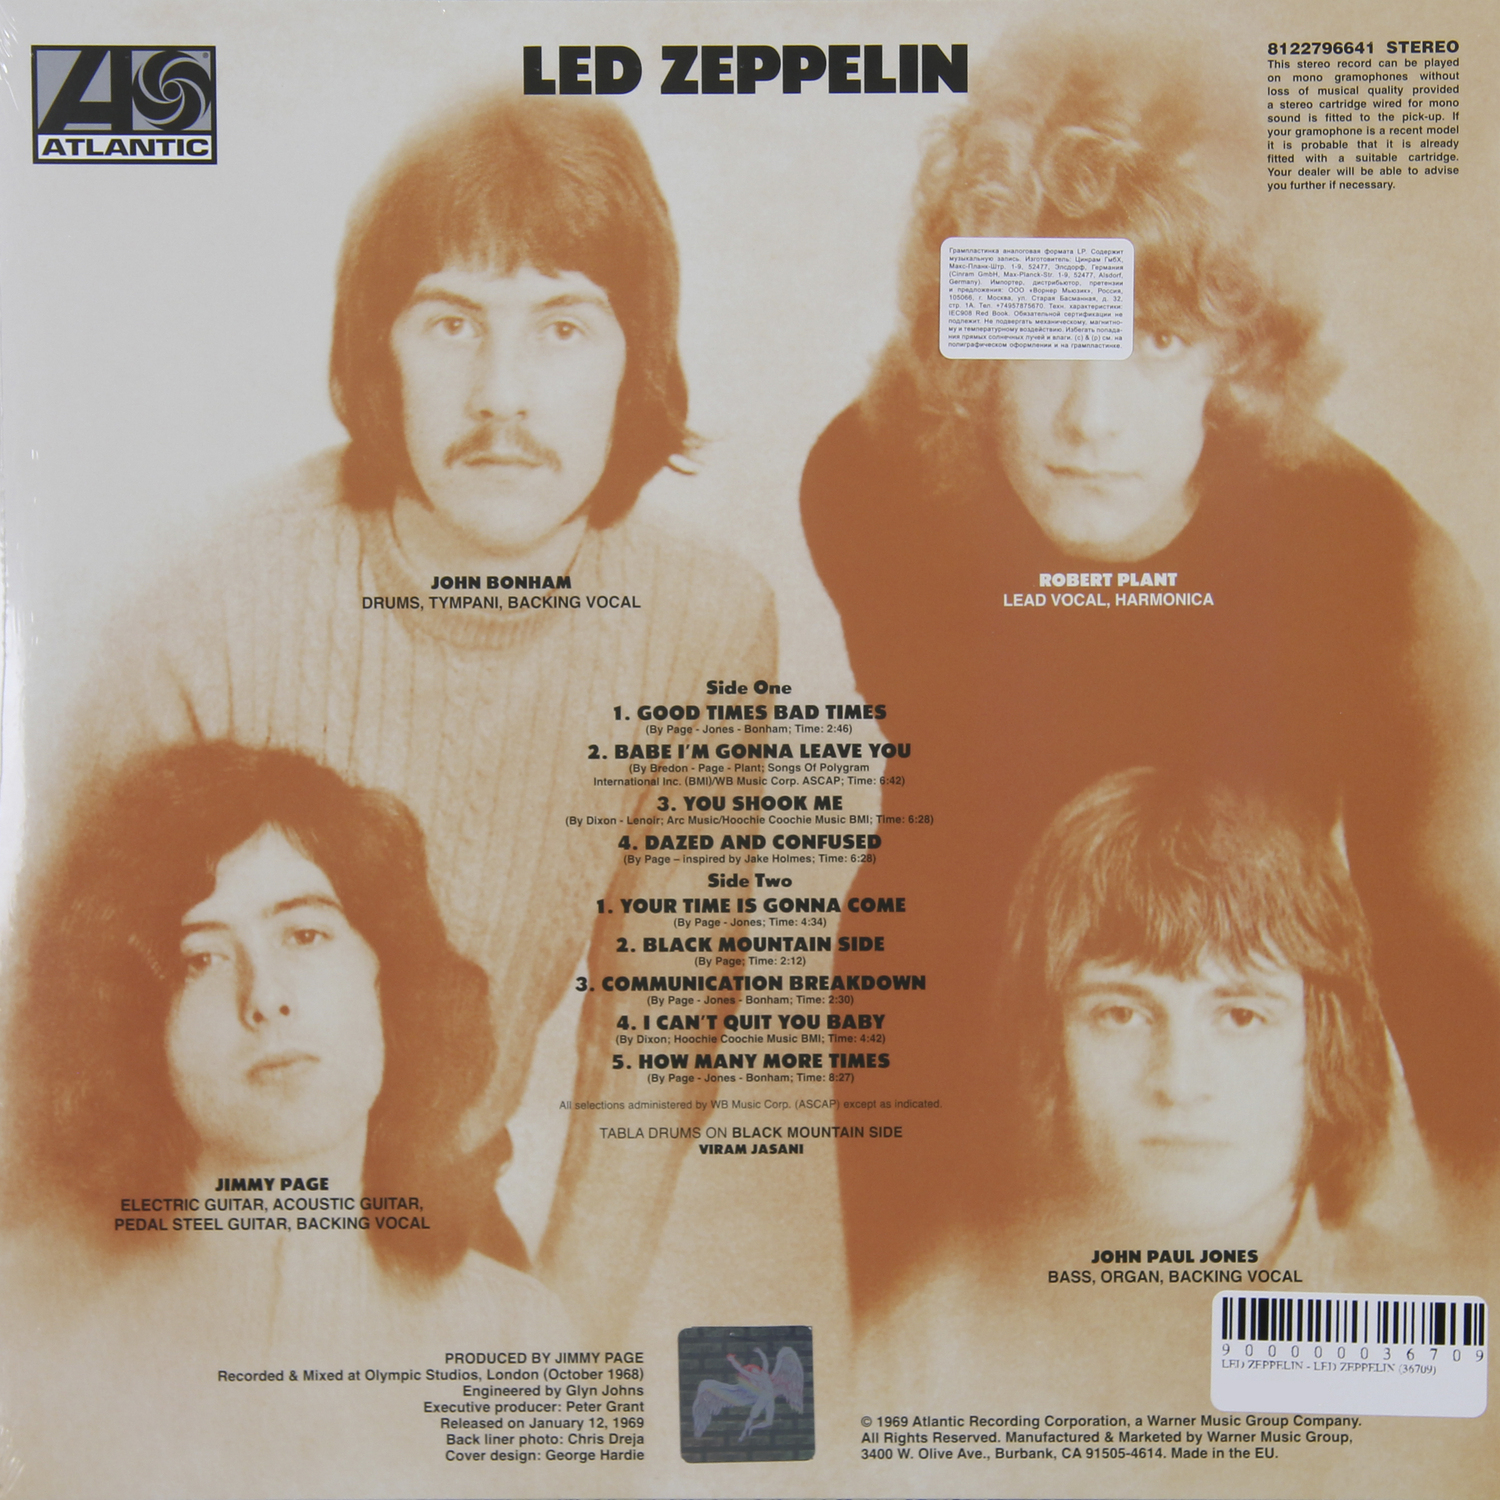 Led Zeppelin - Led Zeppelin IV 2CD Deluxe Edition 2014